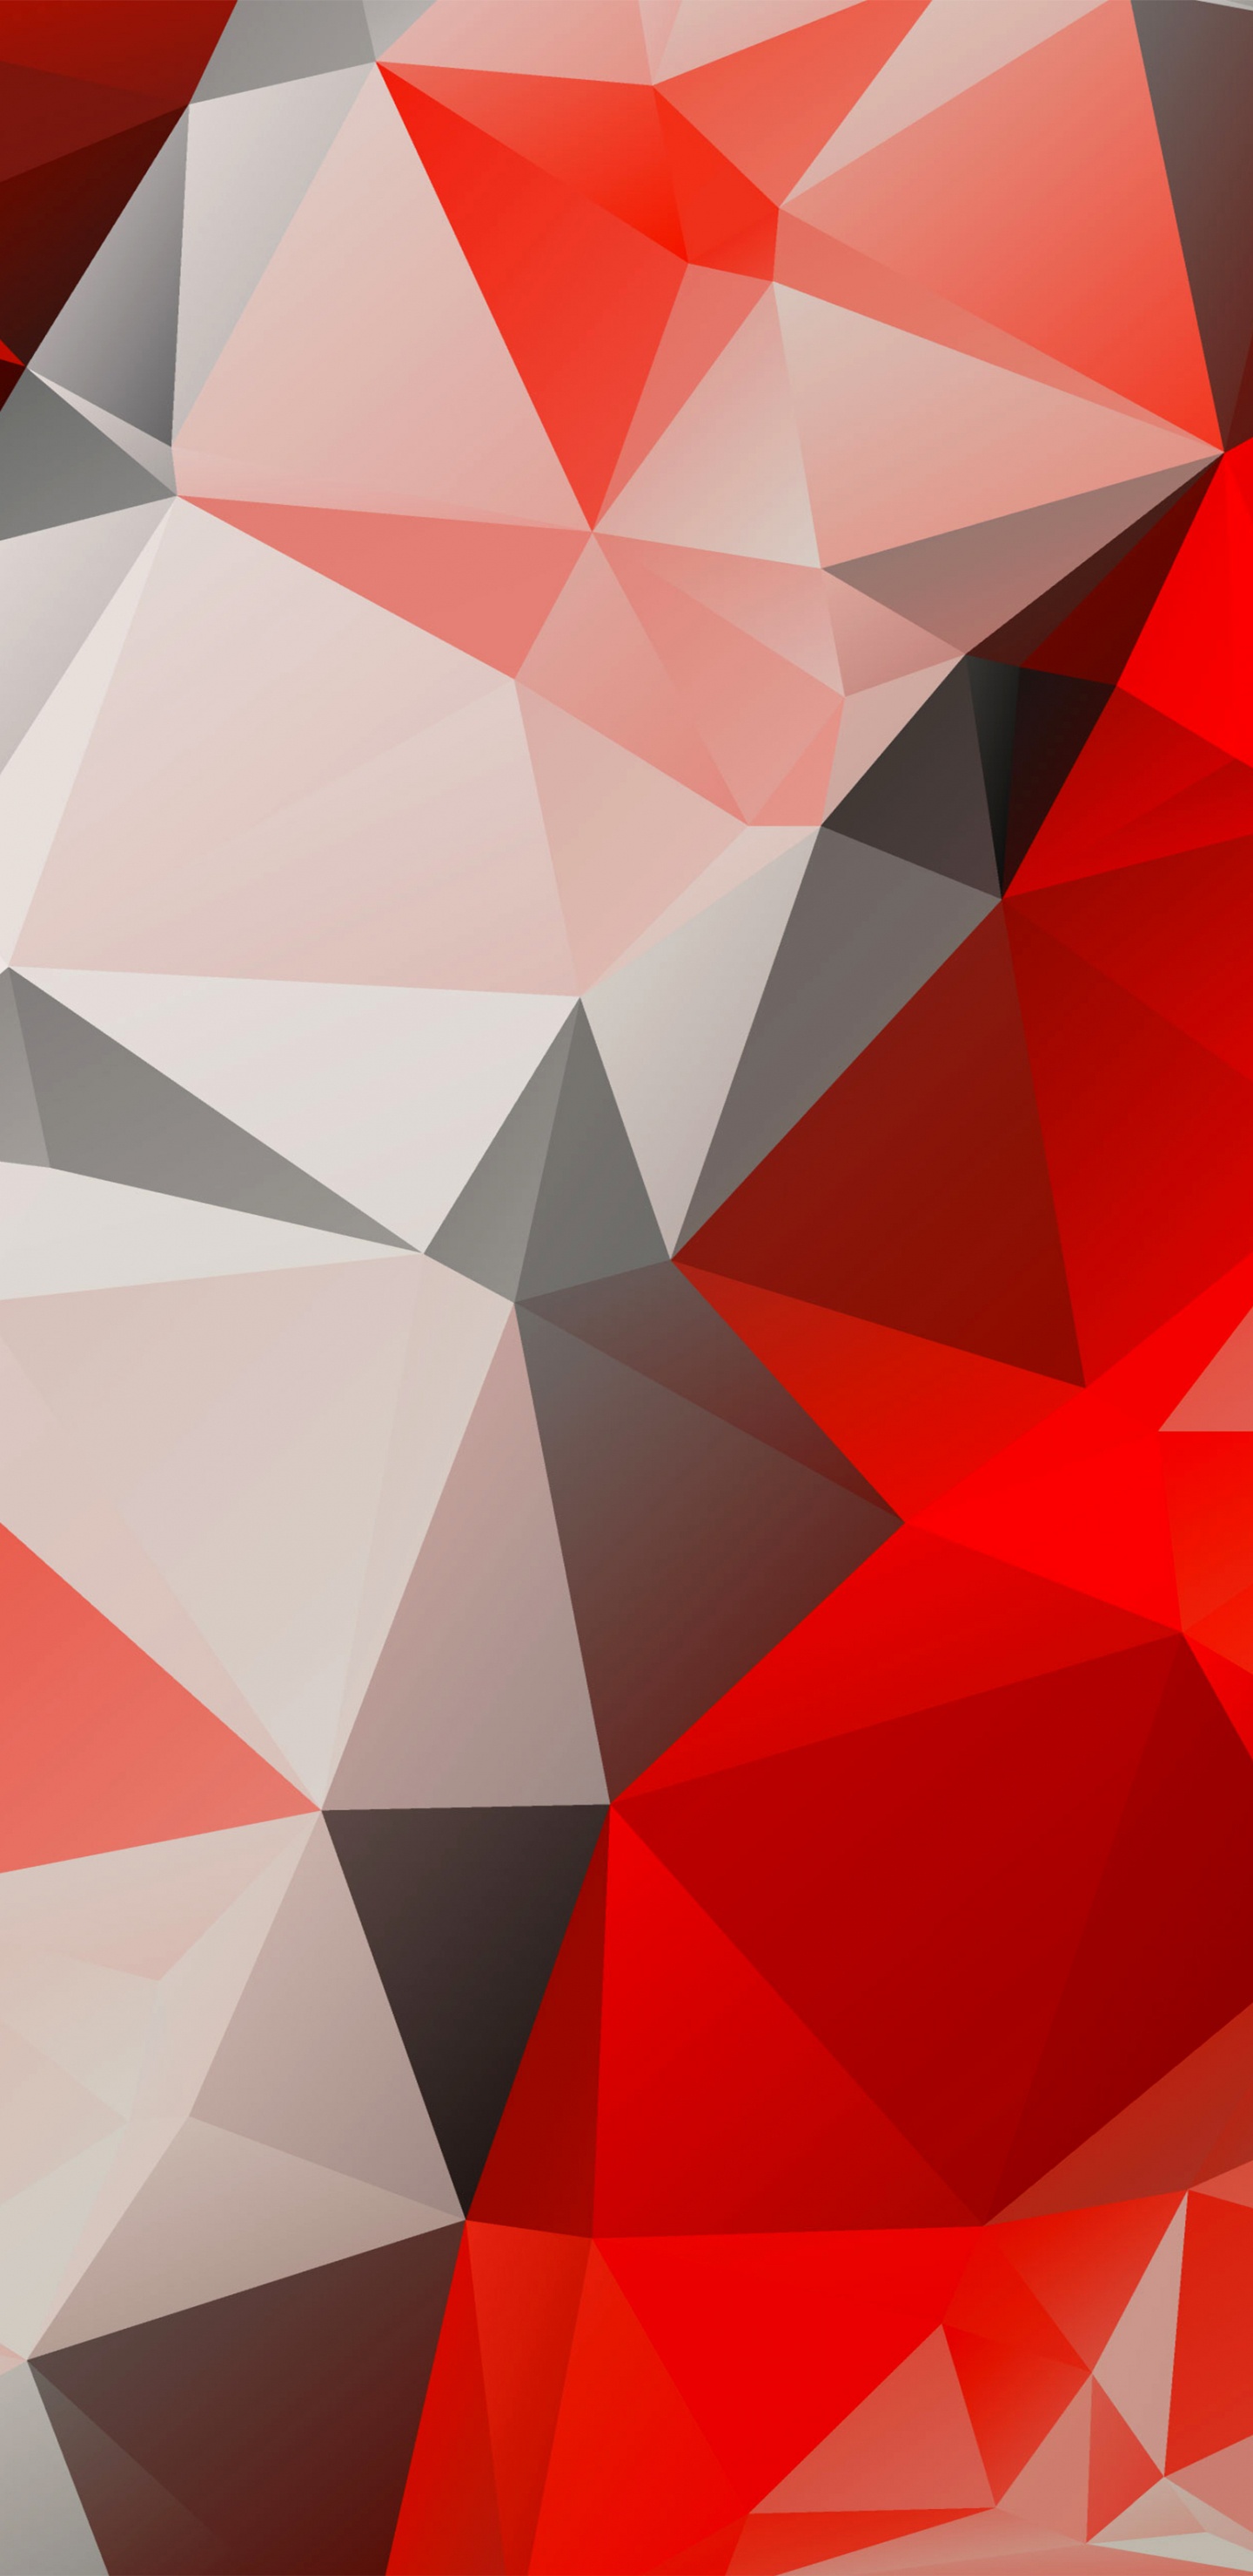 多边形, 红色的, 三角形, 对称, 矢量图形 壁纸 1440x2960 允许